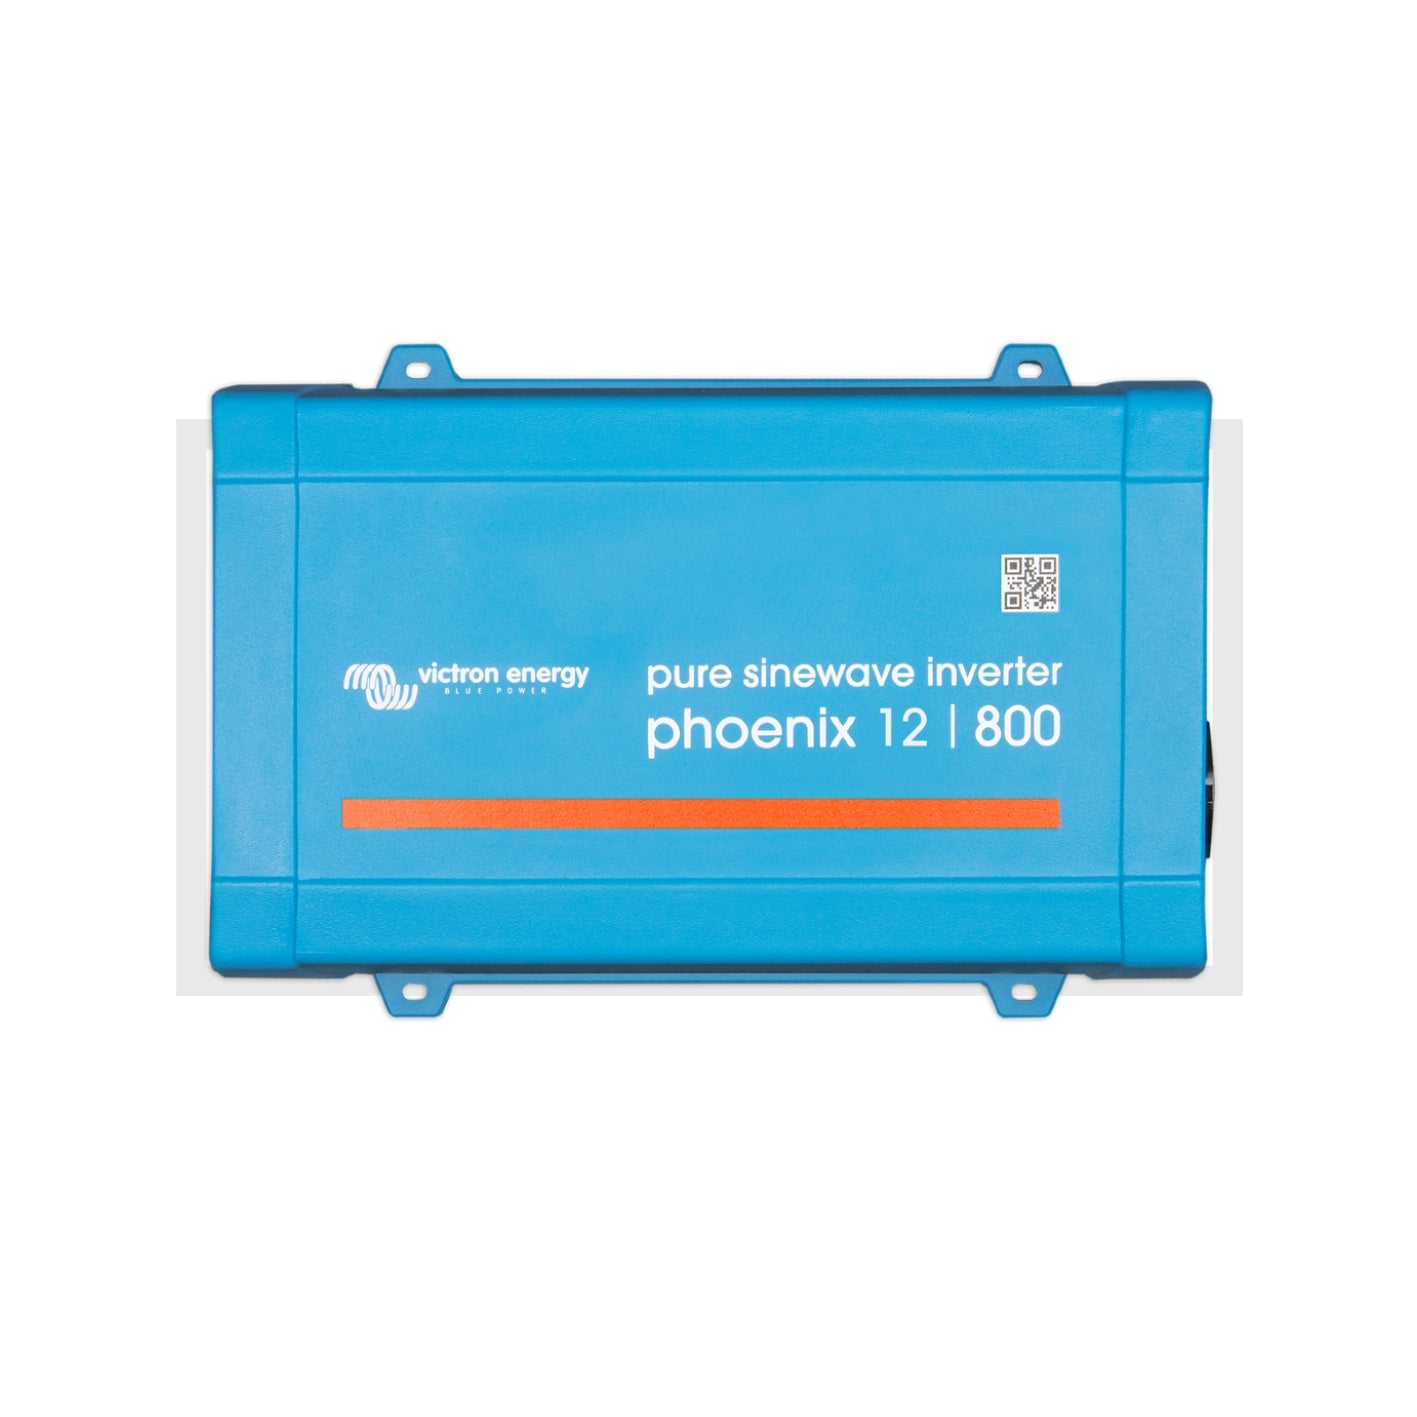 Victron Phoenix Inverter - up to 1200 Watt